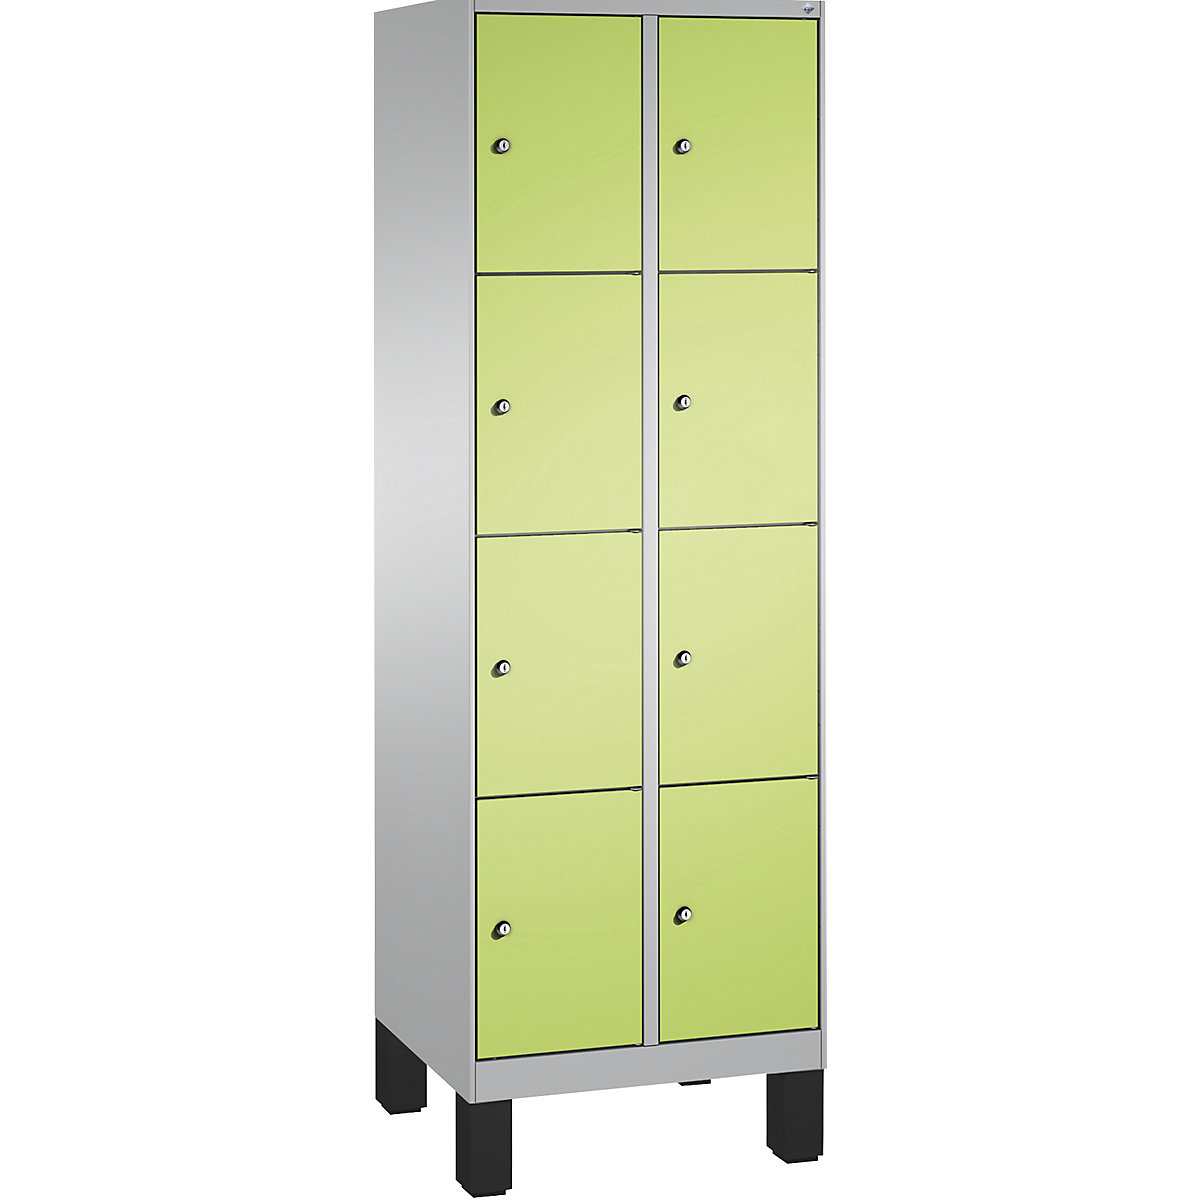 Armoire à casiers sur pieds EVOLO – C+P, 2 compartiments, 4 casiers chacun, largeur compartiments 300 mm, aluminium / vert-10